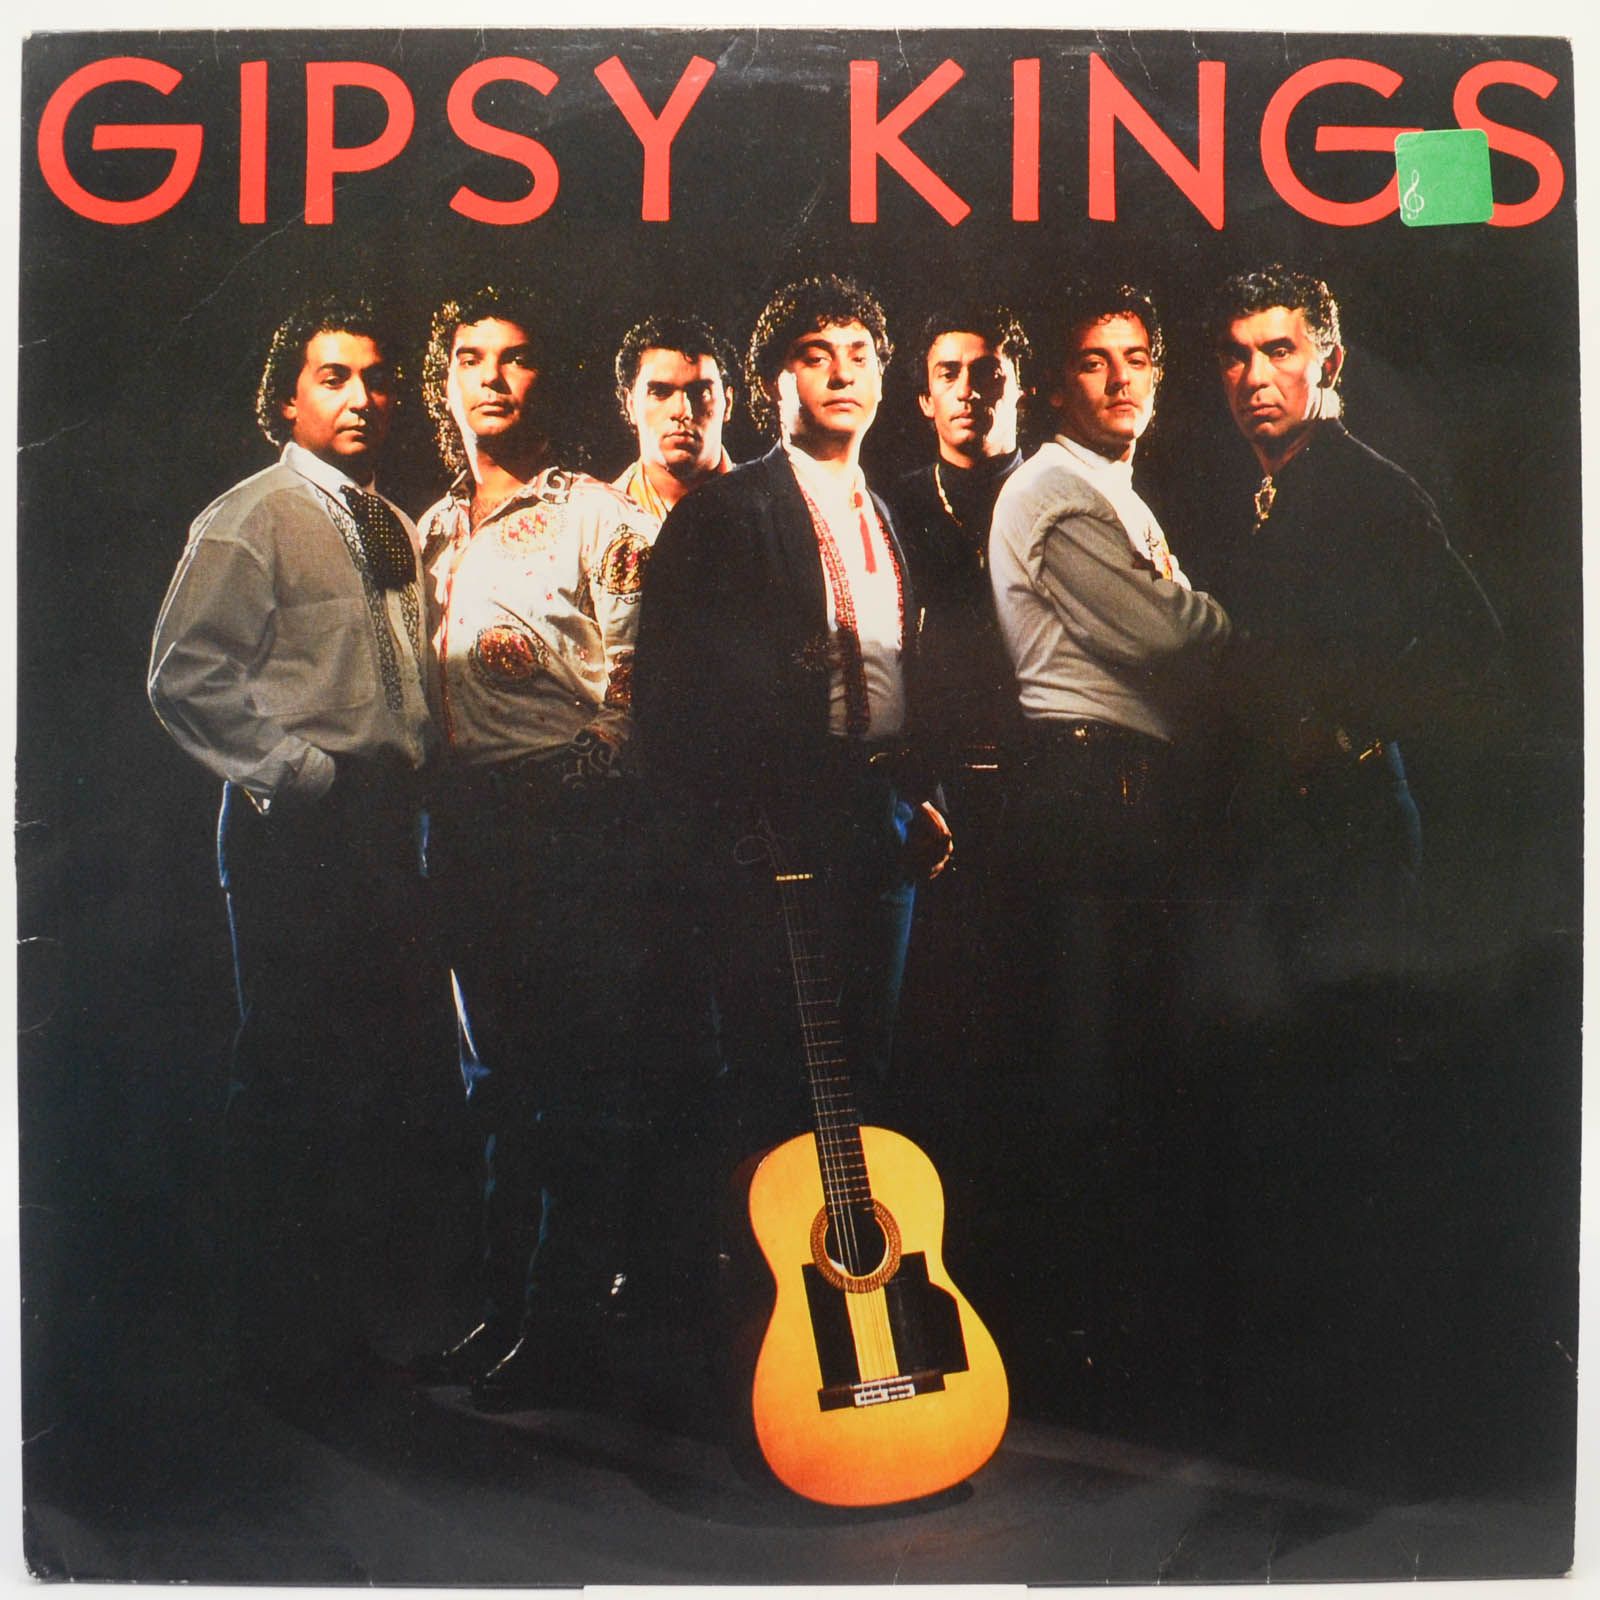 Gipsy Kings — Gipsy Kings, 1988